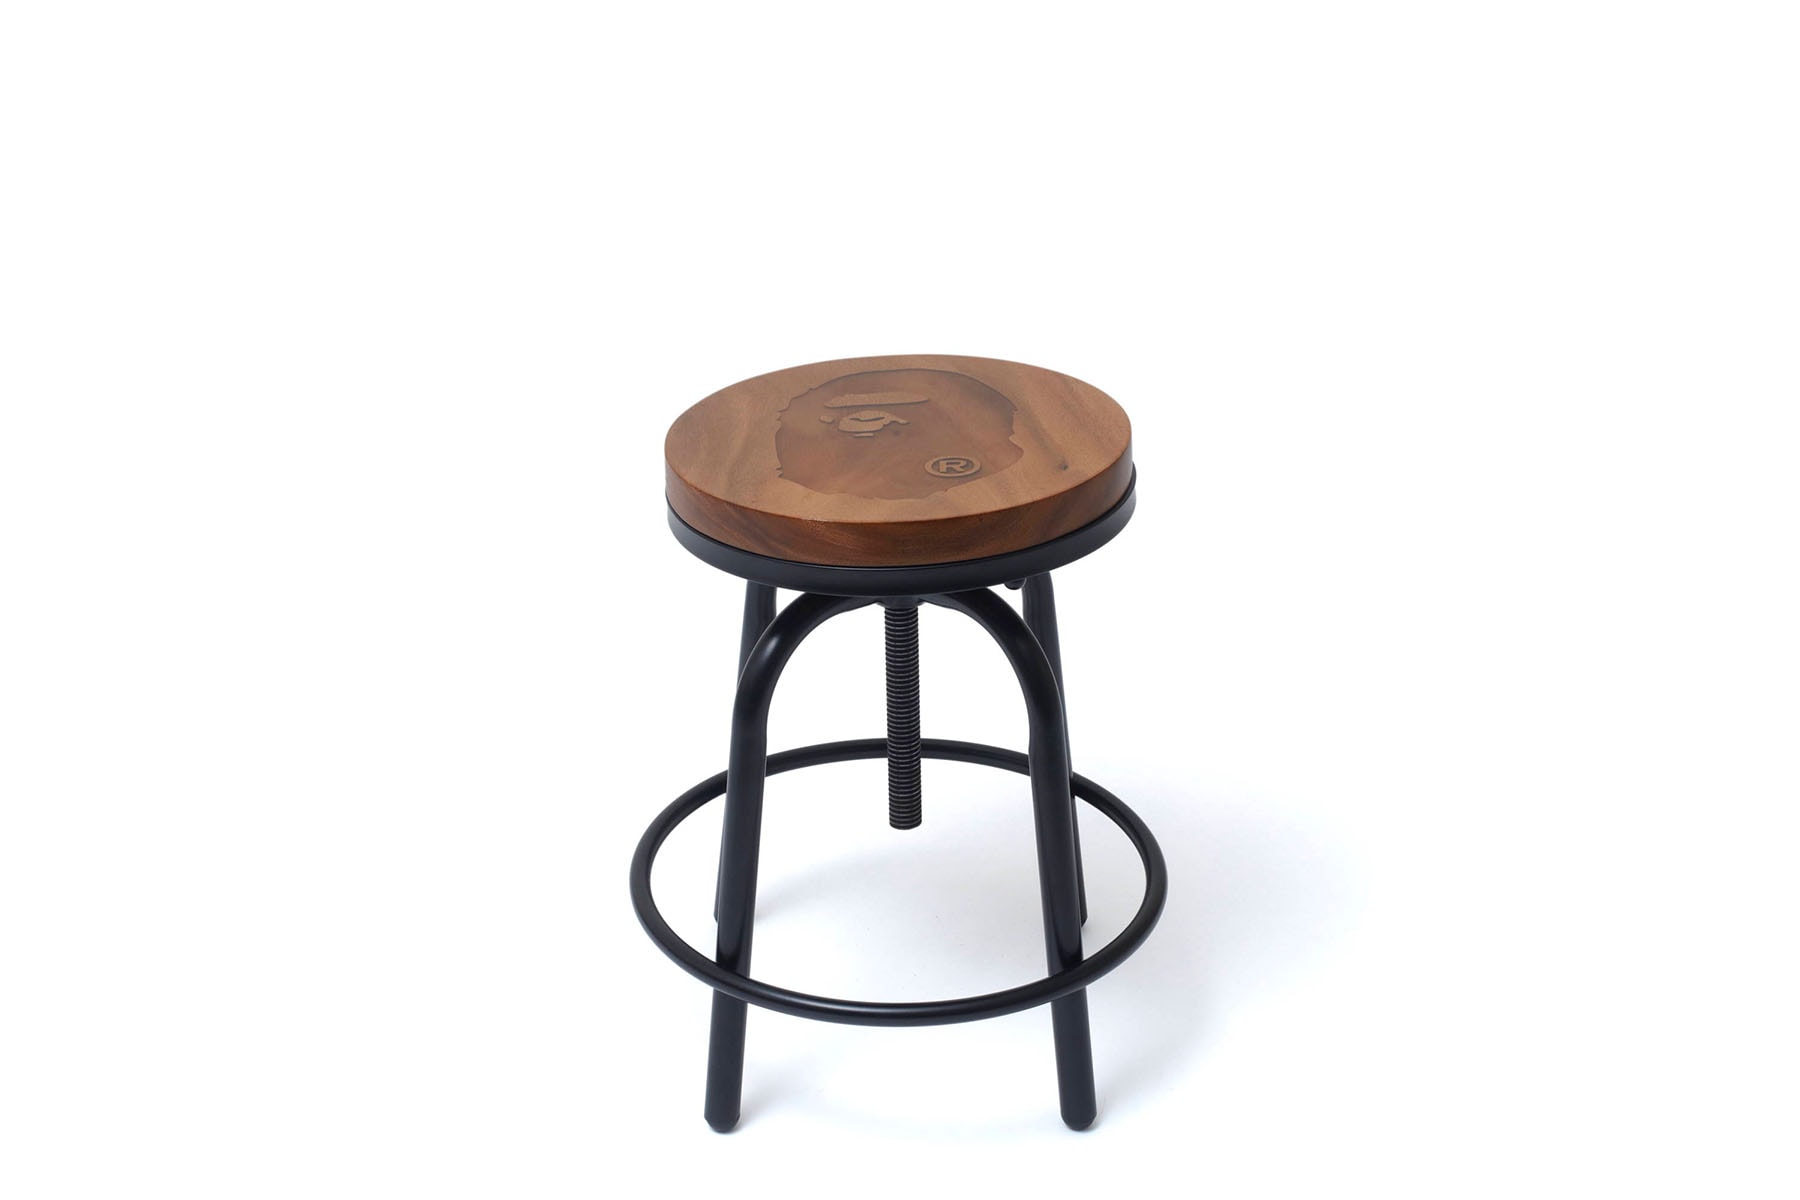 베이프의 가구 라인 '베이프 홈' 신제품 출시, 커피 테이블, 스툴, 의자, 원목, BAPE HOME